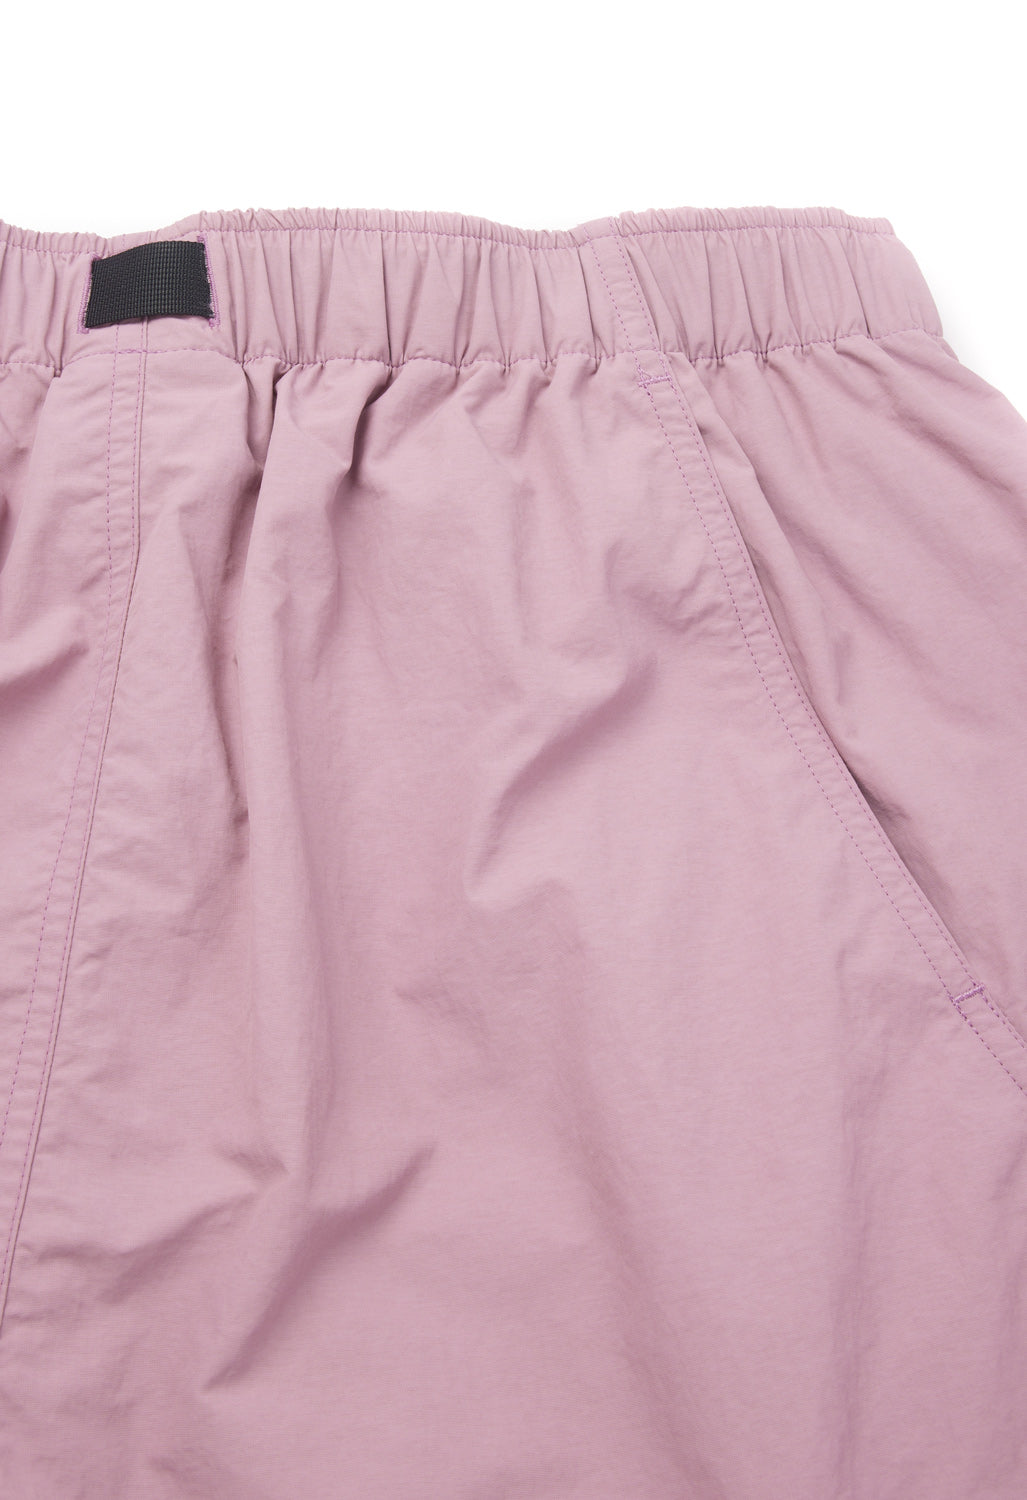 Goldwin Men's Wind Light Easy Shorts - Dusty Pink